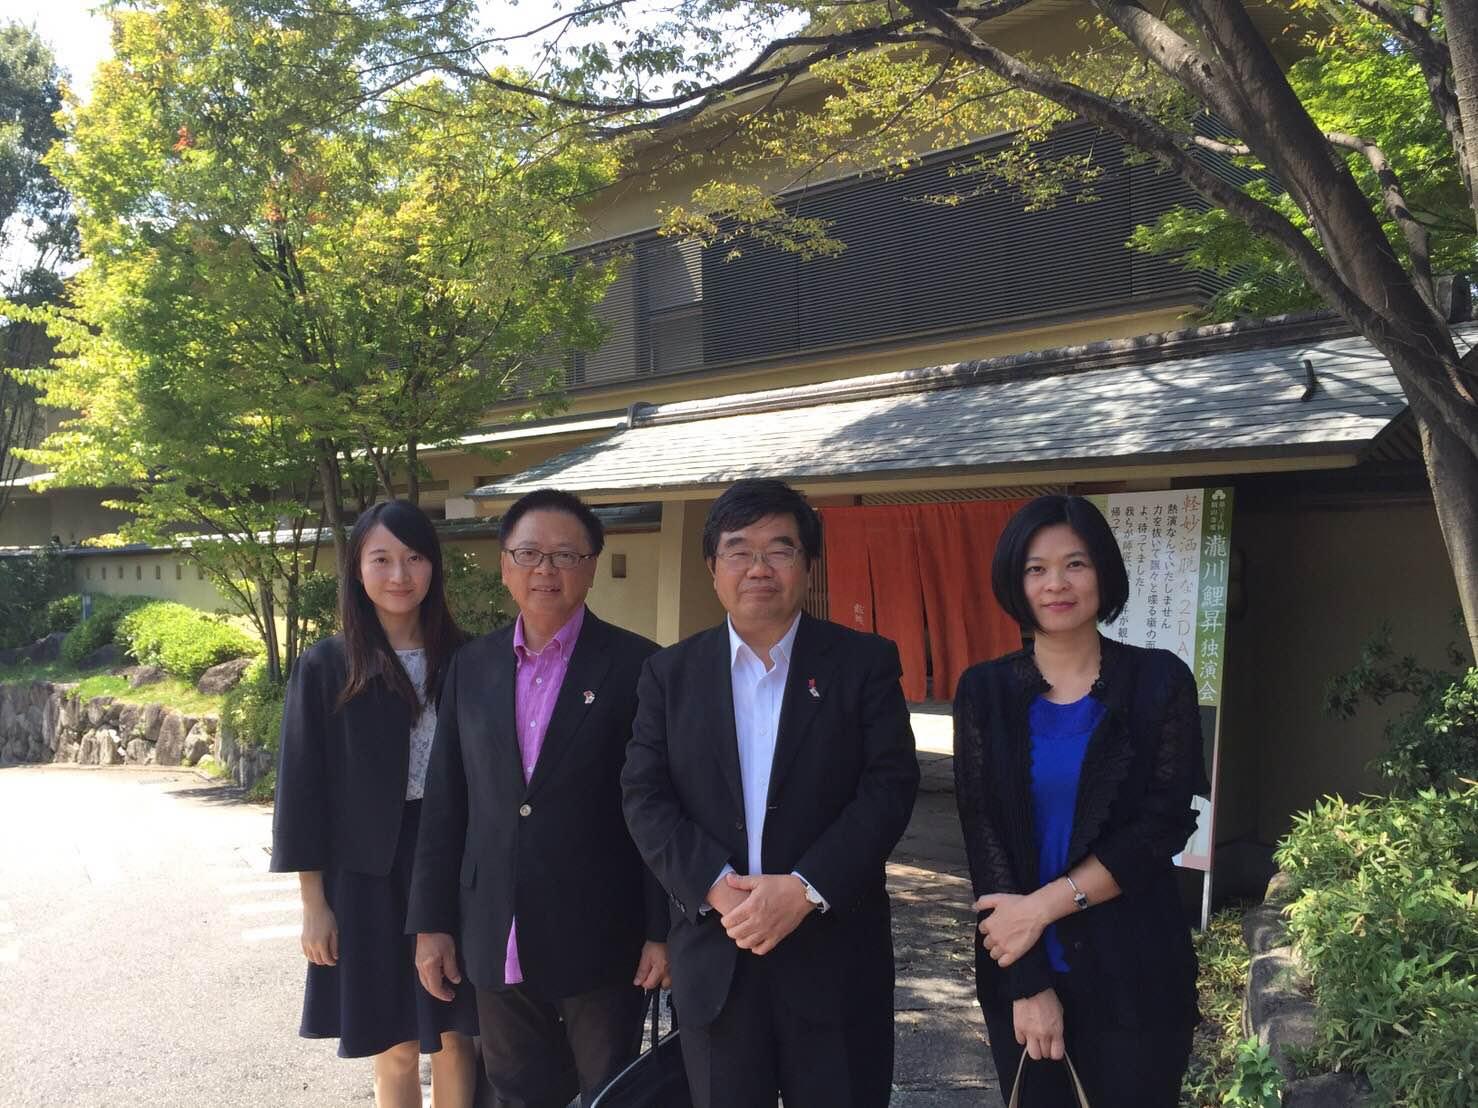 8月31日、台湾三三企業交流会副秘書長、日台商務交流協進会秘書長黃章富計3名が戎総領事を表敬訪問した。観山荘にて歓迎昼食会を行った。